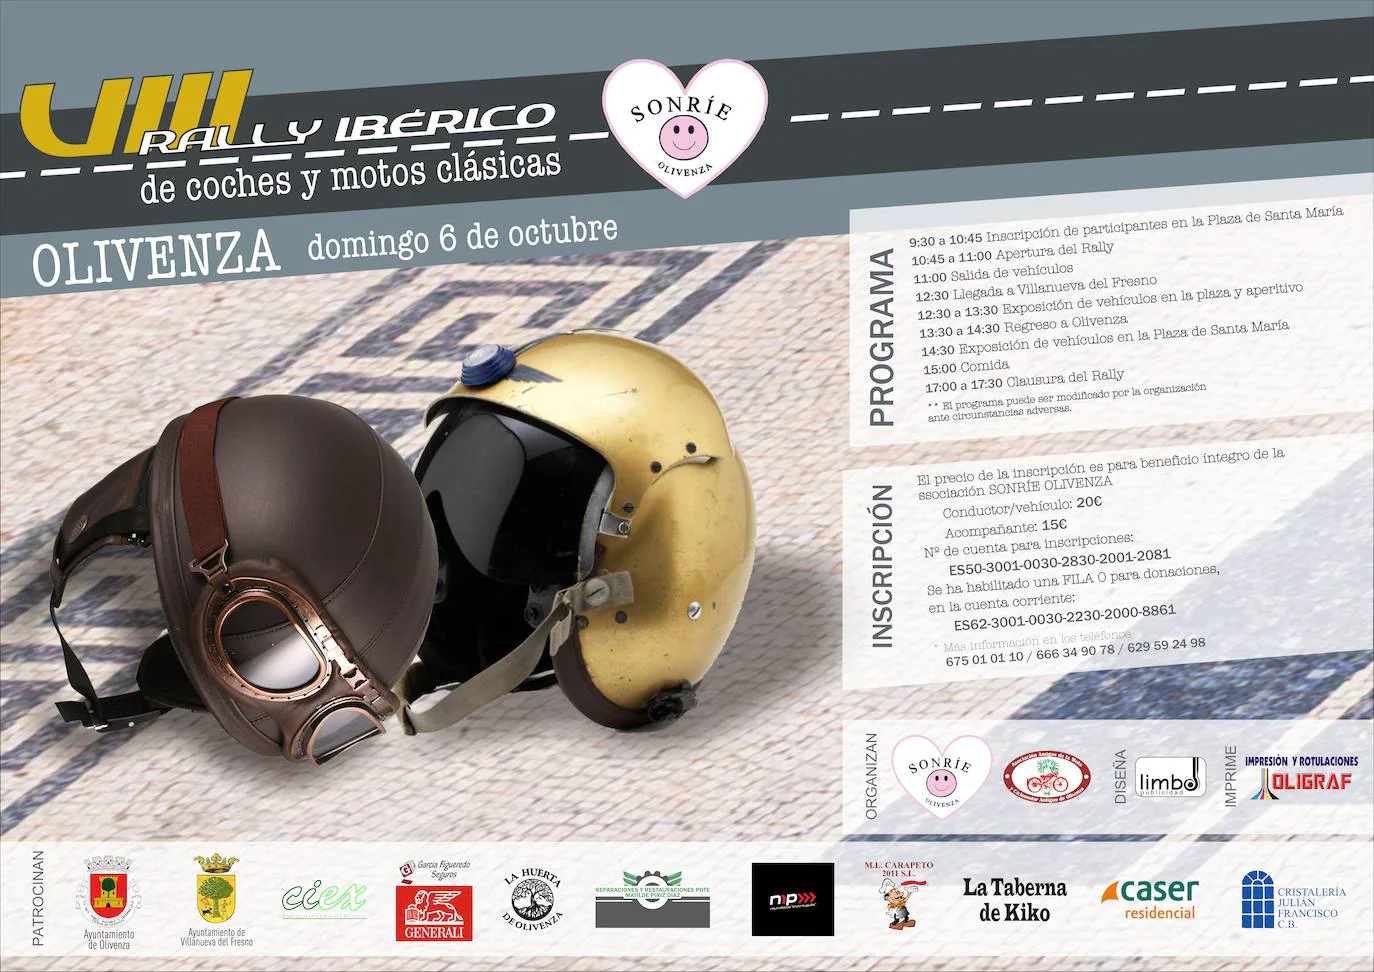 Olivenza acogerá el VIII Rally Ibérico de motos y coches clásicos a beneficio de Sonríe Olivenza